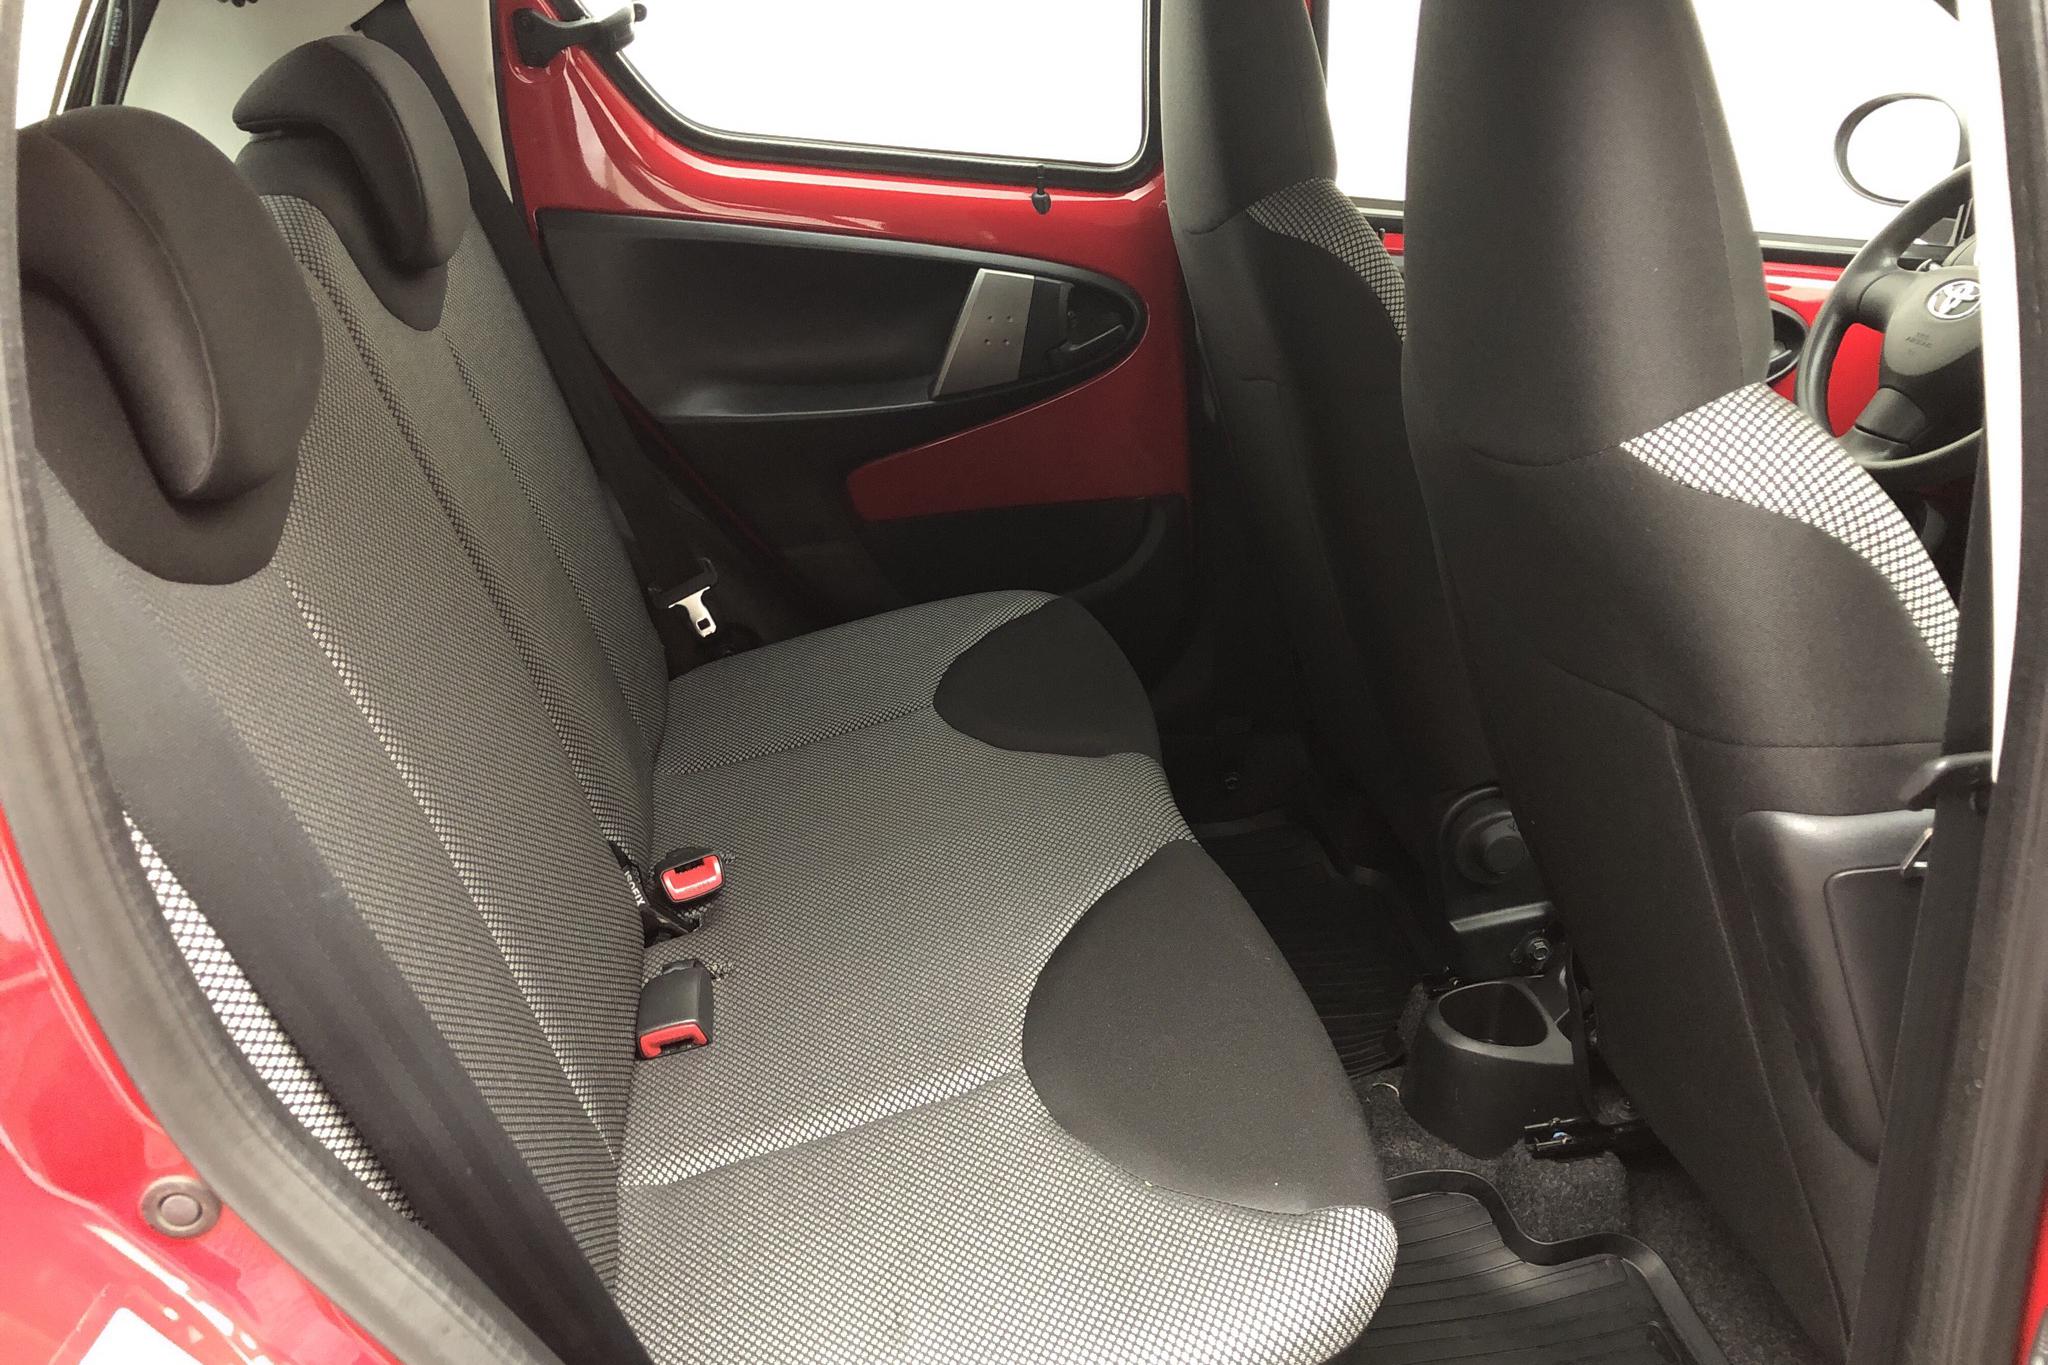 Toyota Aygo 1.0 VVT-i 5dr (68hk) - 6 952 mil - Manuell - röd - 2014